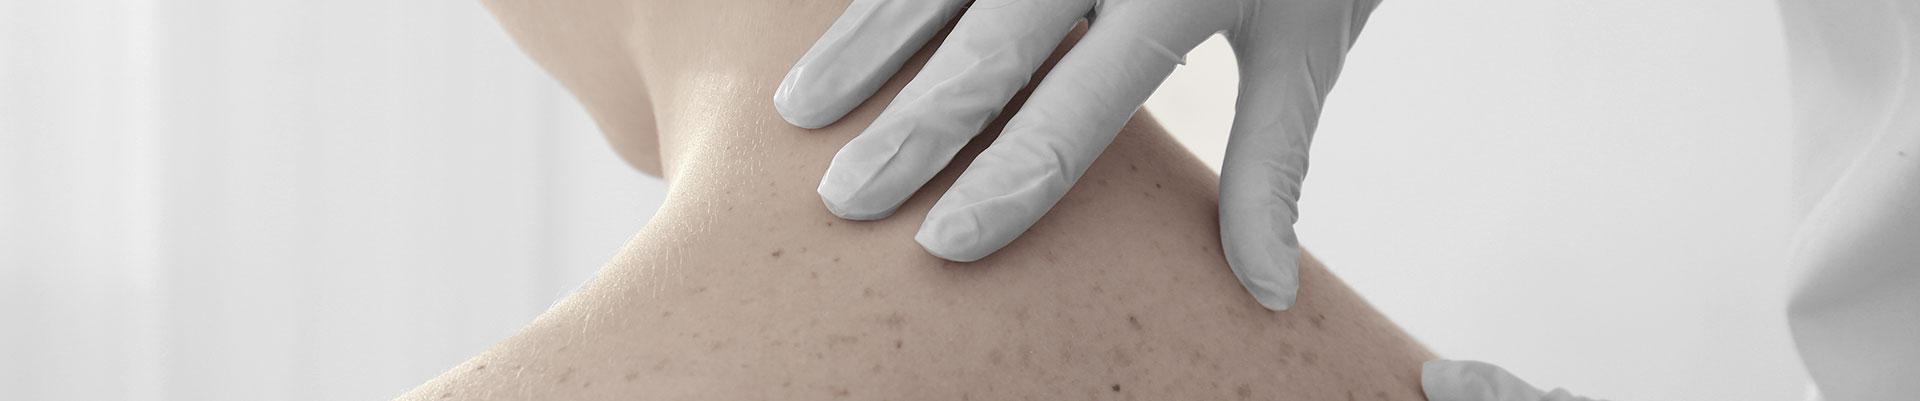 Mãos de médico analisando pintas nas costas de paciente